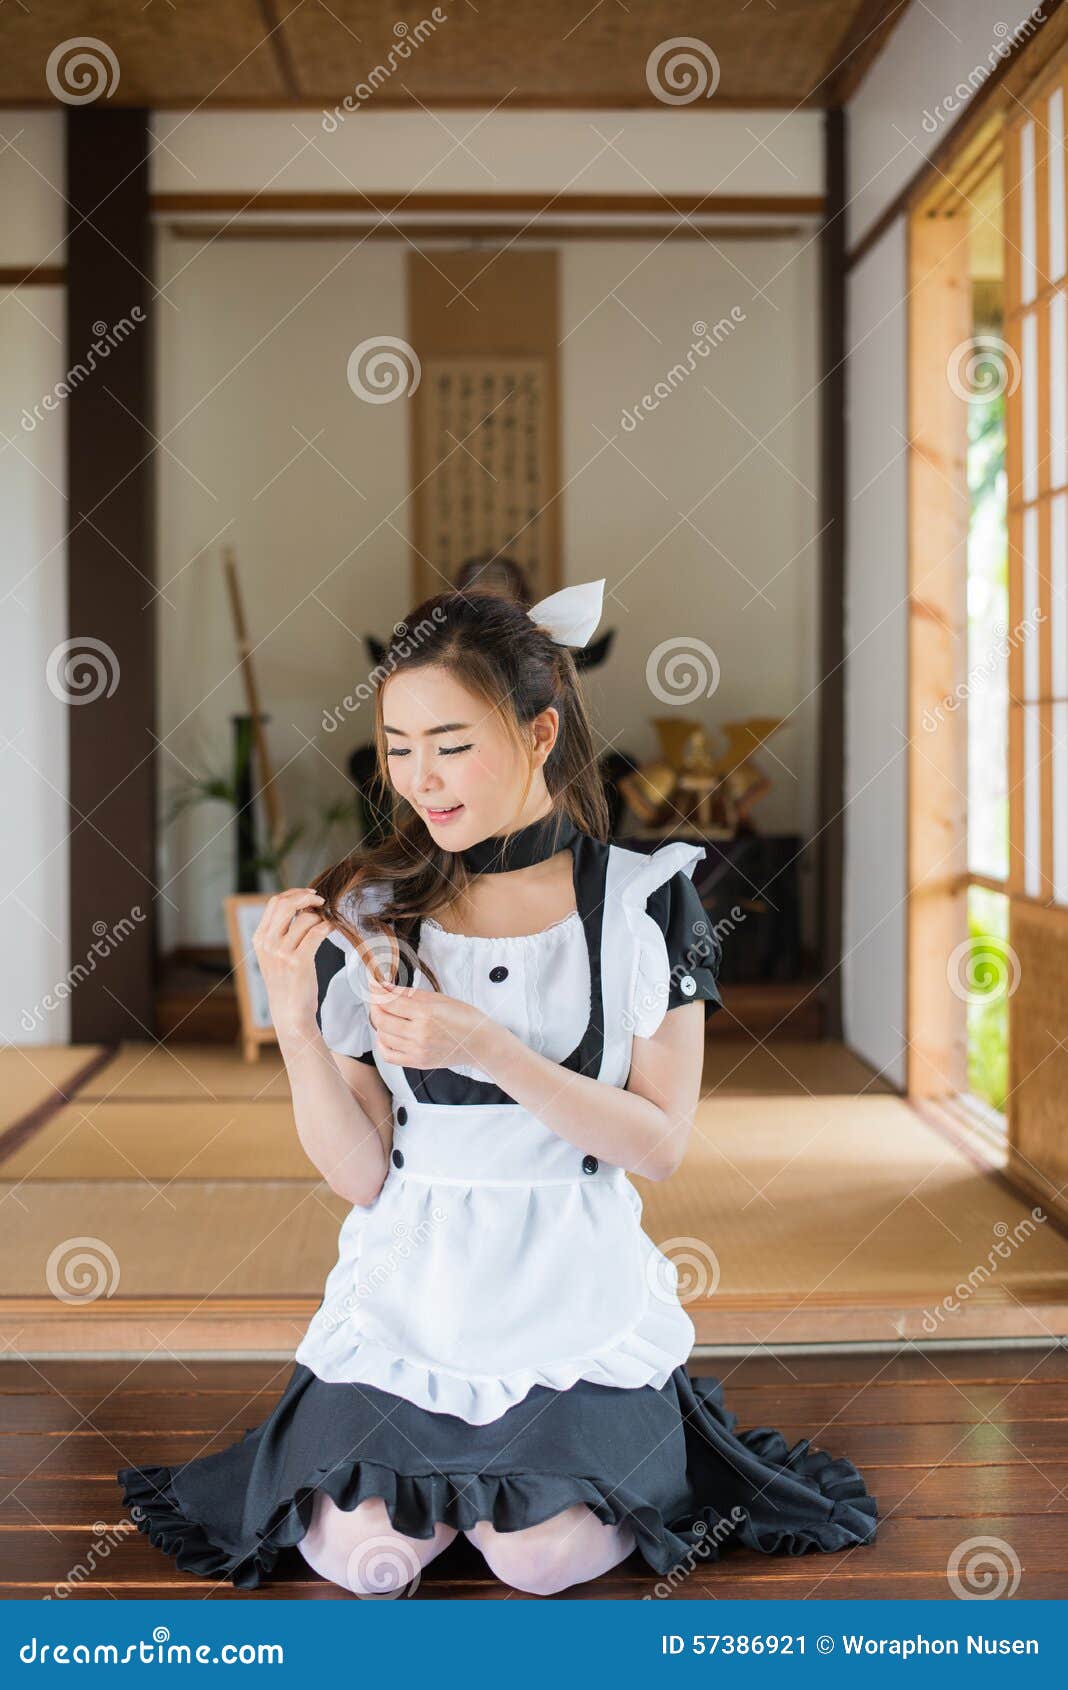 maid shared asian Cute